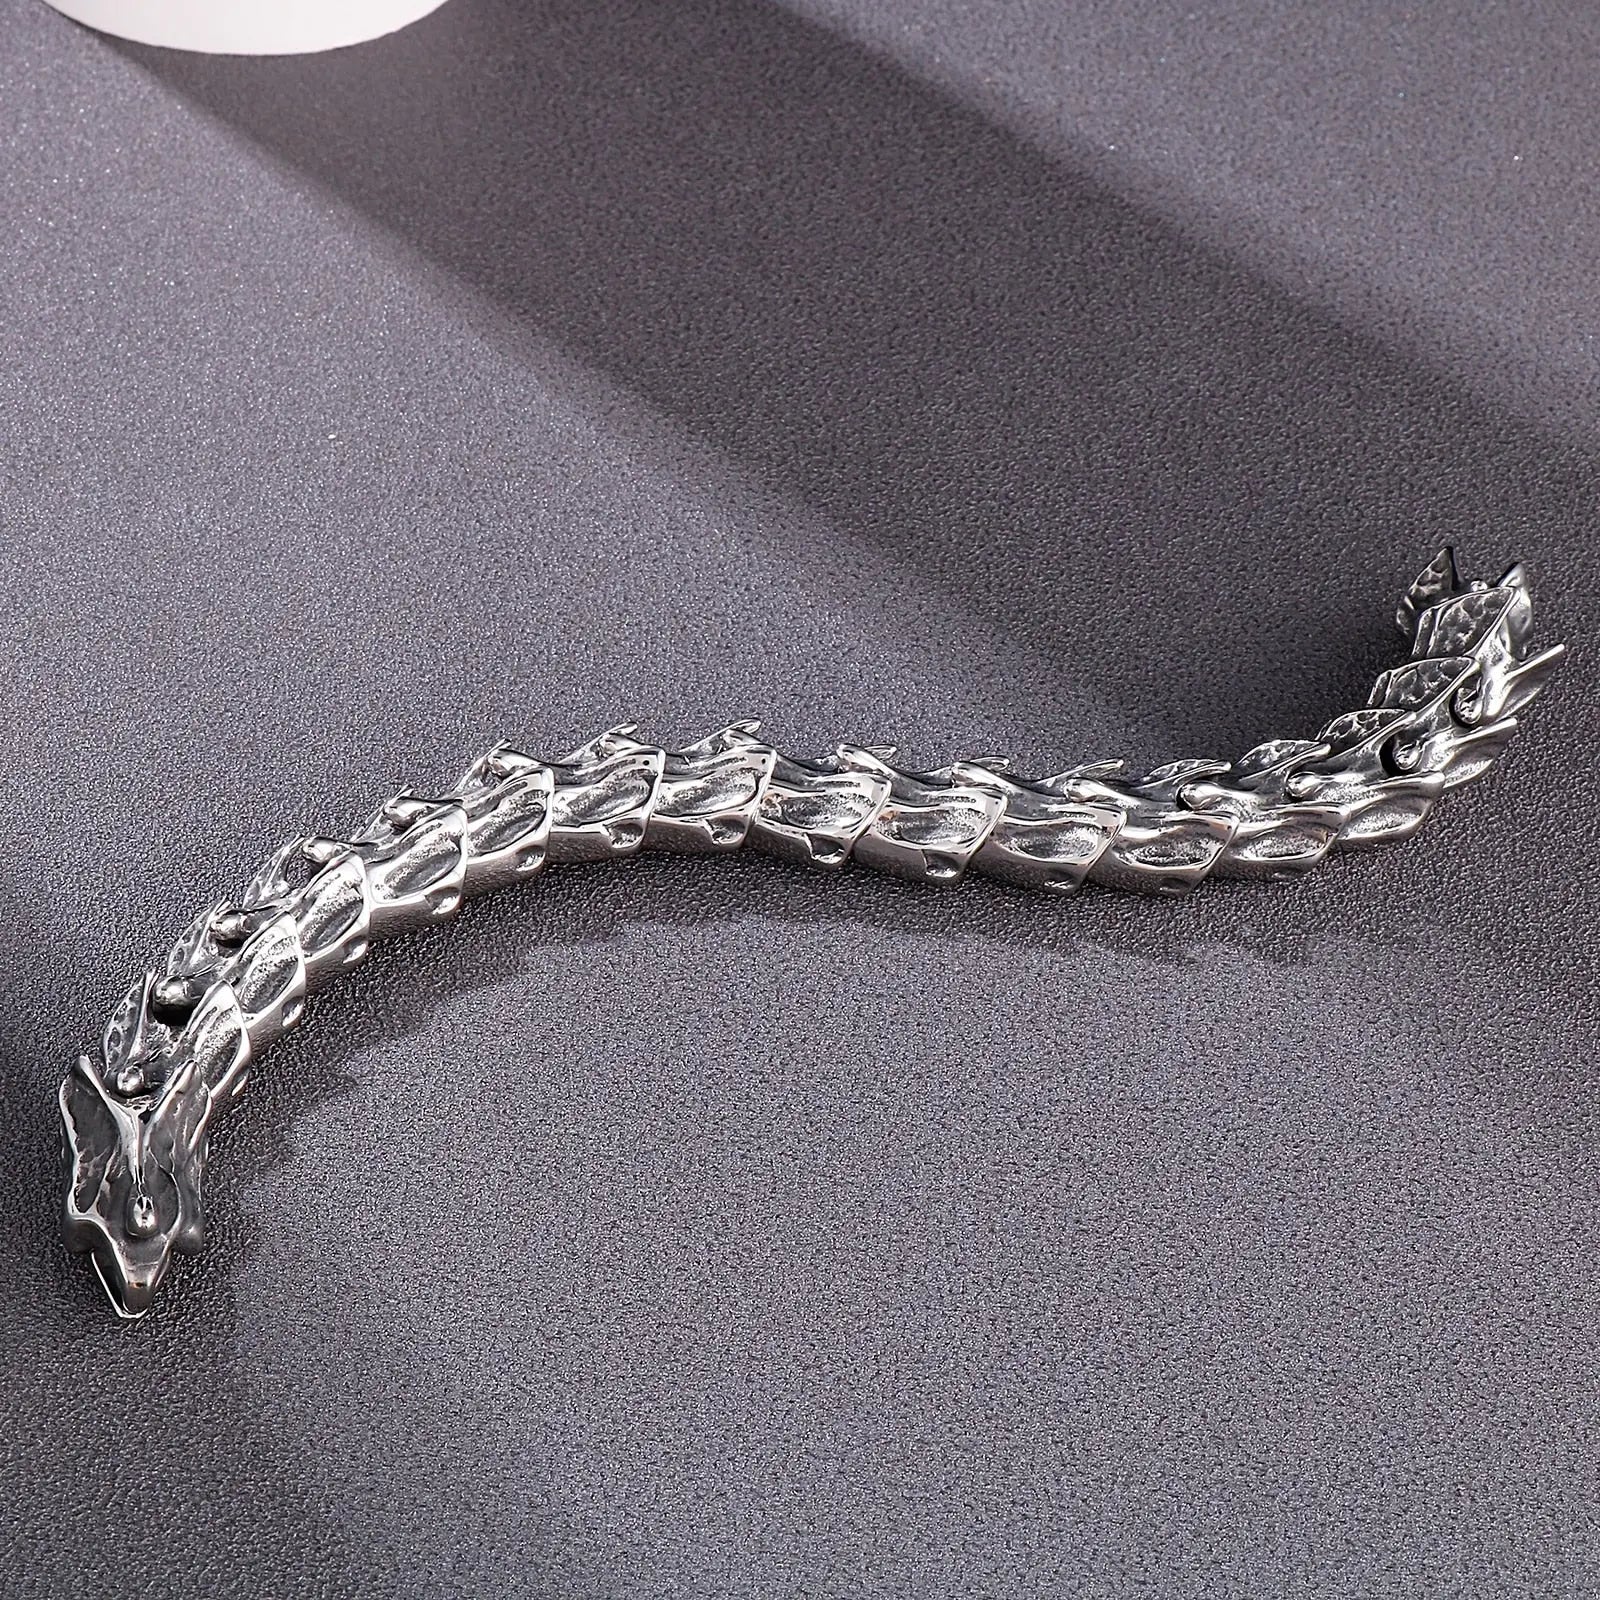 Draconic Spine Dragon Bracelet - Large Heavy Stainless Steel Bracelet